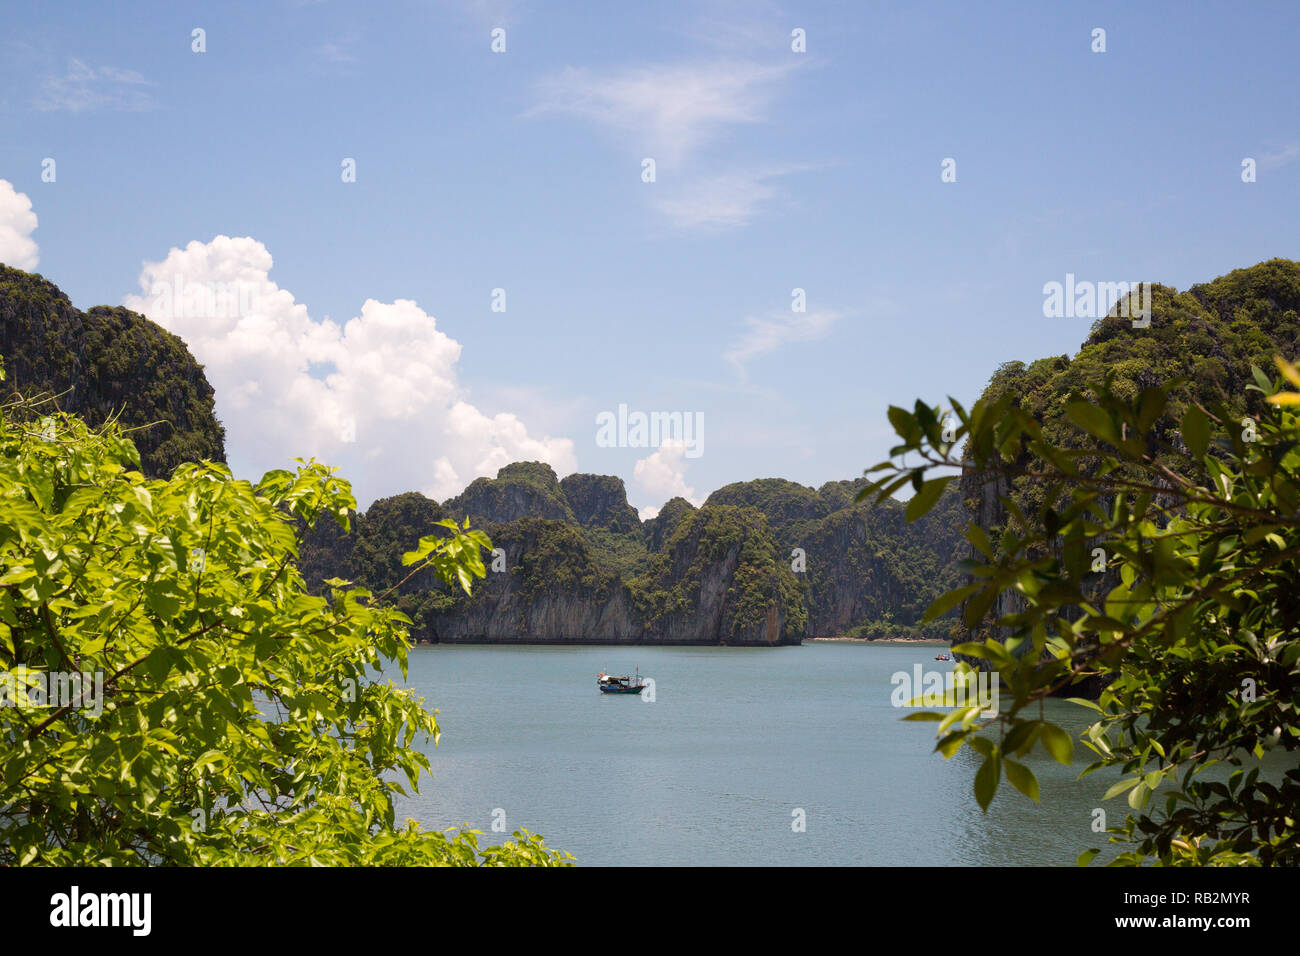 A beautiful setting in Bai Tu Long Bay, Vietnam. Stock Photo